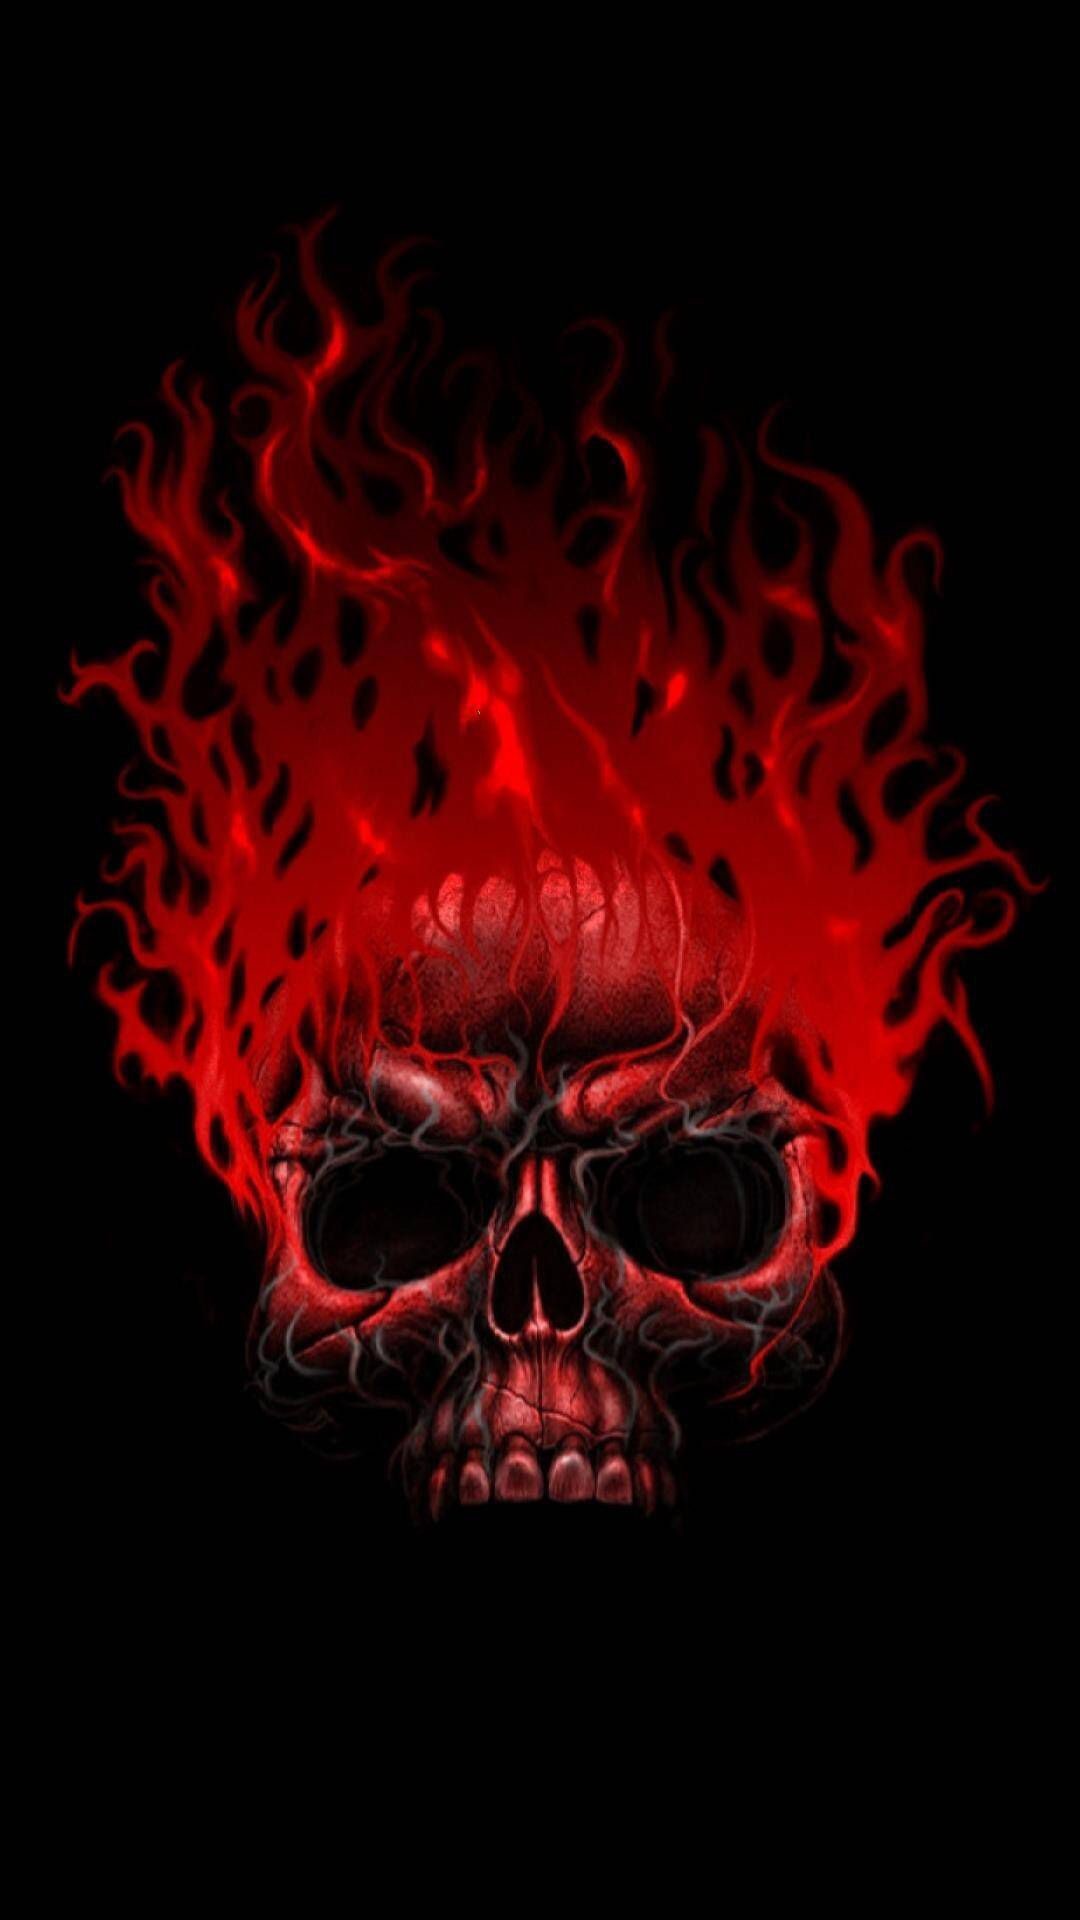 1080x1920 Fire skull Dark Pictures, Dark Pics, Skull Wallpaper, Skull Art, Phone  Backgrounds